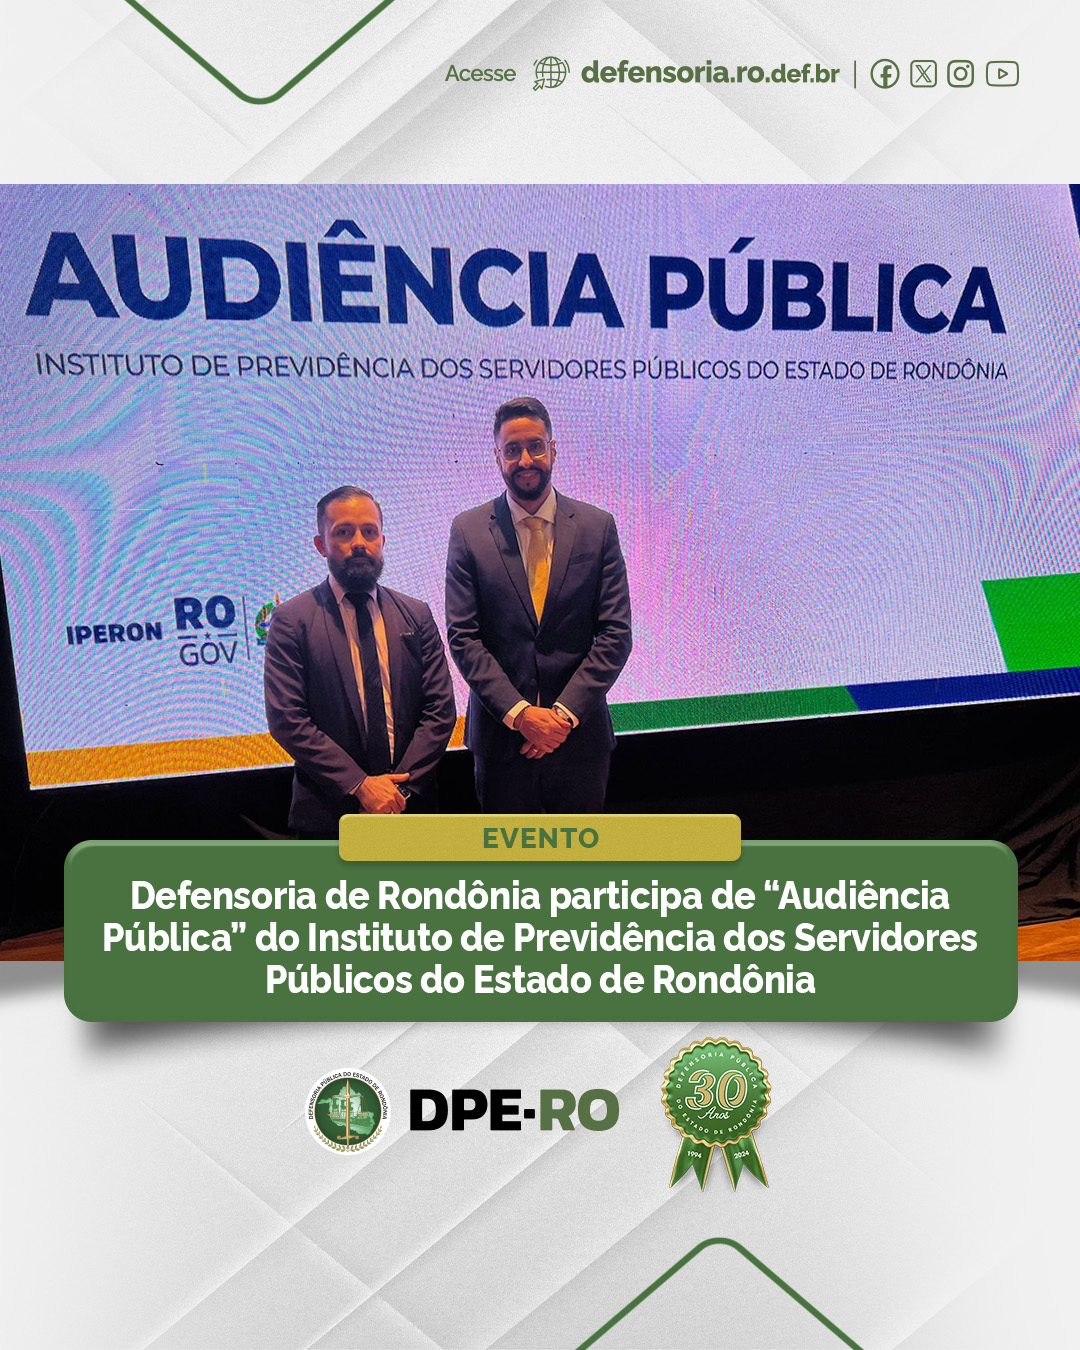 Defensoria de Rondônia participa de “Audiência Pública” do Instituto de Previdência dos Servidores Públicos do Estado de Rondônia